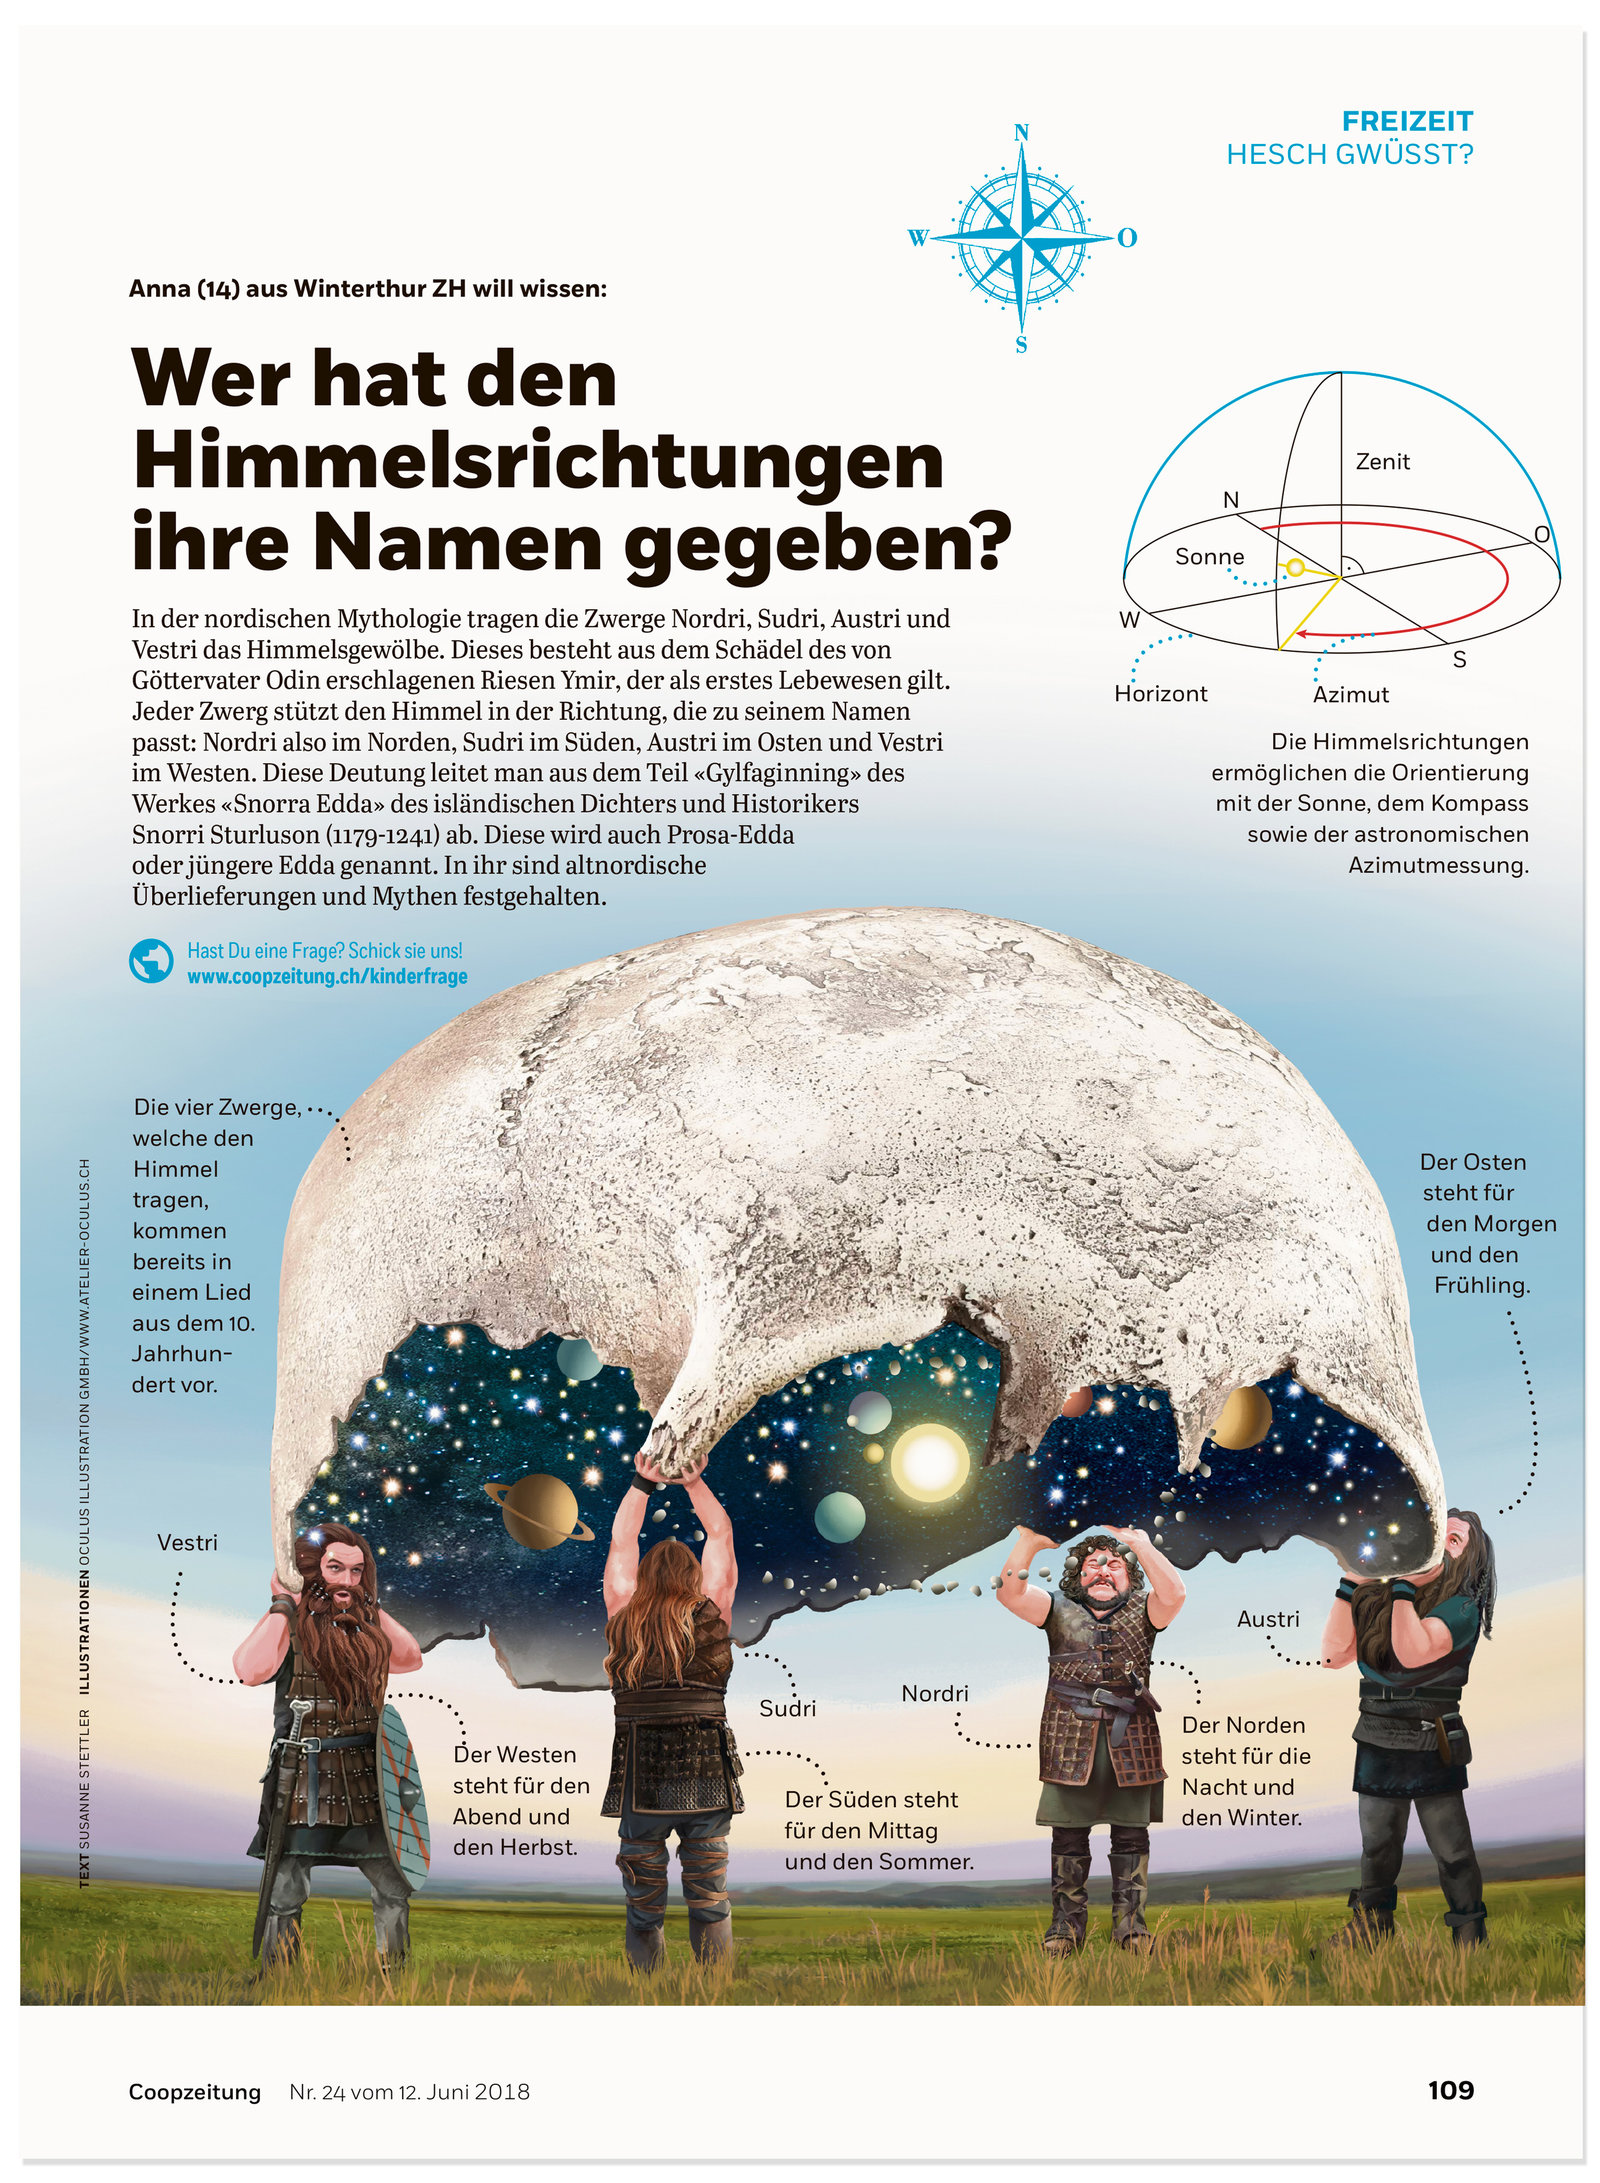 oculus-illustration-coopzeitung-hesch-gwuesst-himmelsrichtungen